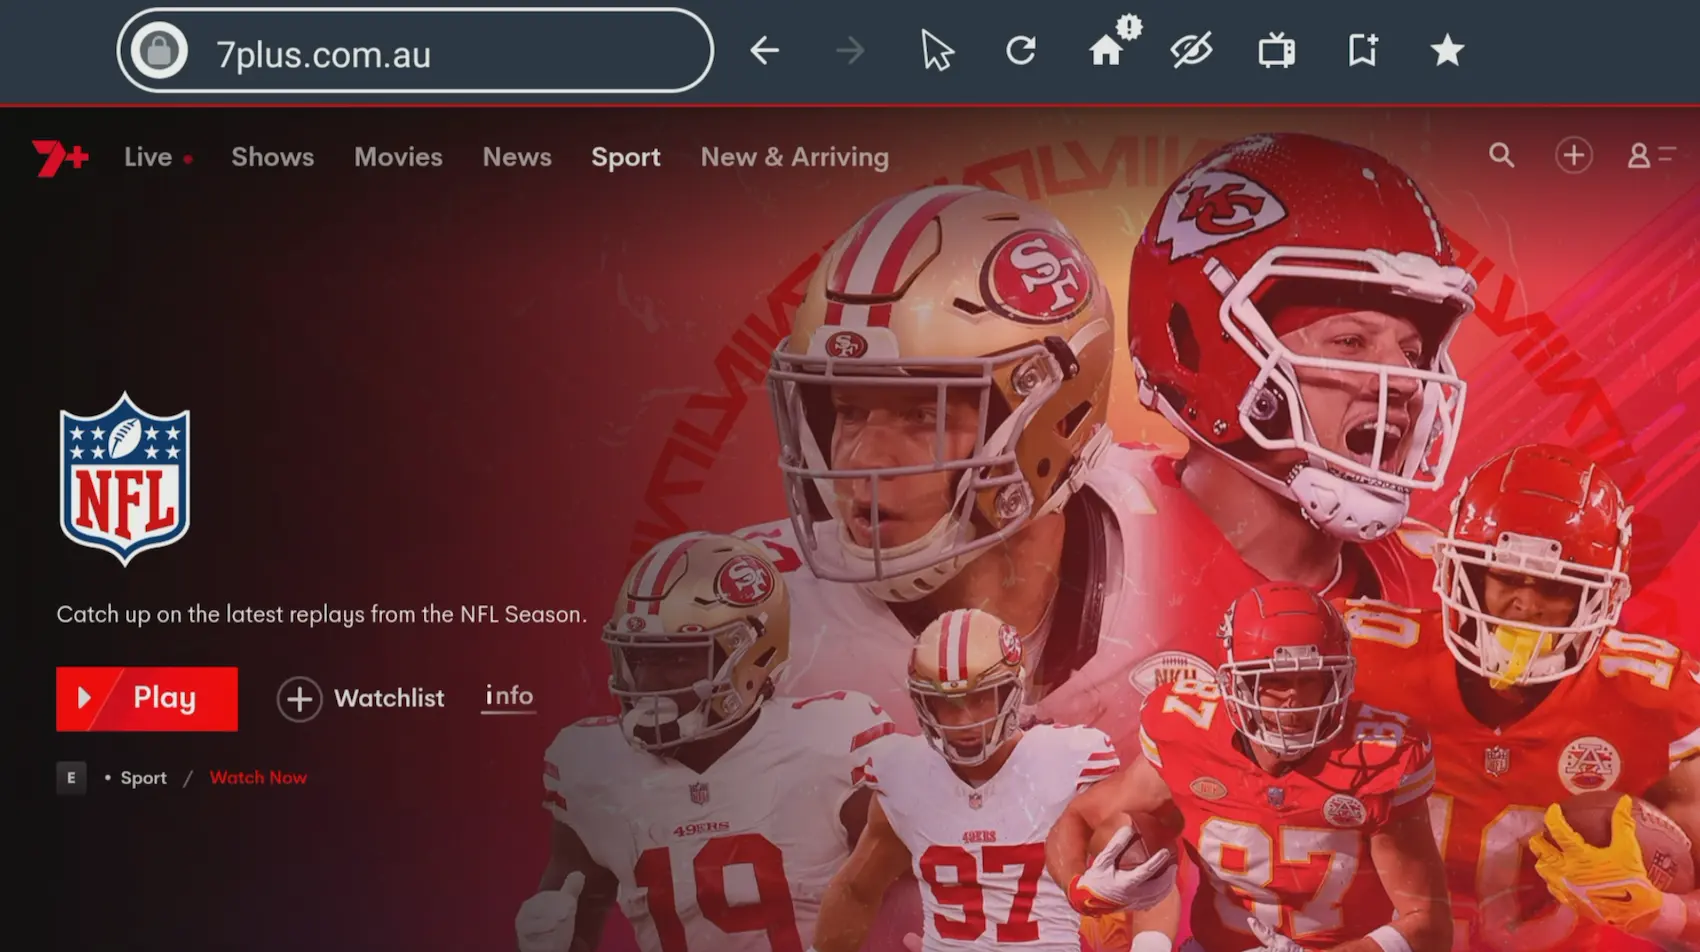 Contenido de la NFL en 7plus.com.au, al que se accede a través del navegador Silk integrado en Fire TV. Presenta un collage de jugadores de fútbol americano de los San Francisco 49ers y Kansas City Chiefs en poses de acción, con un enfoque en los mariscales de campo en el centro. El logotipo de la NFL se muestra de forma destacada.